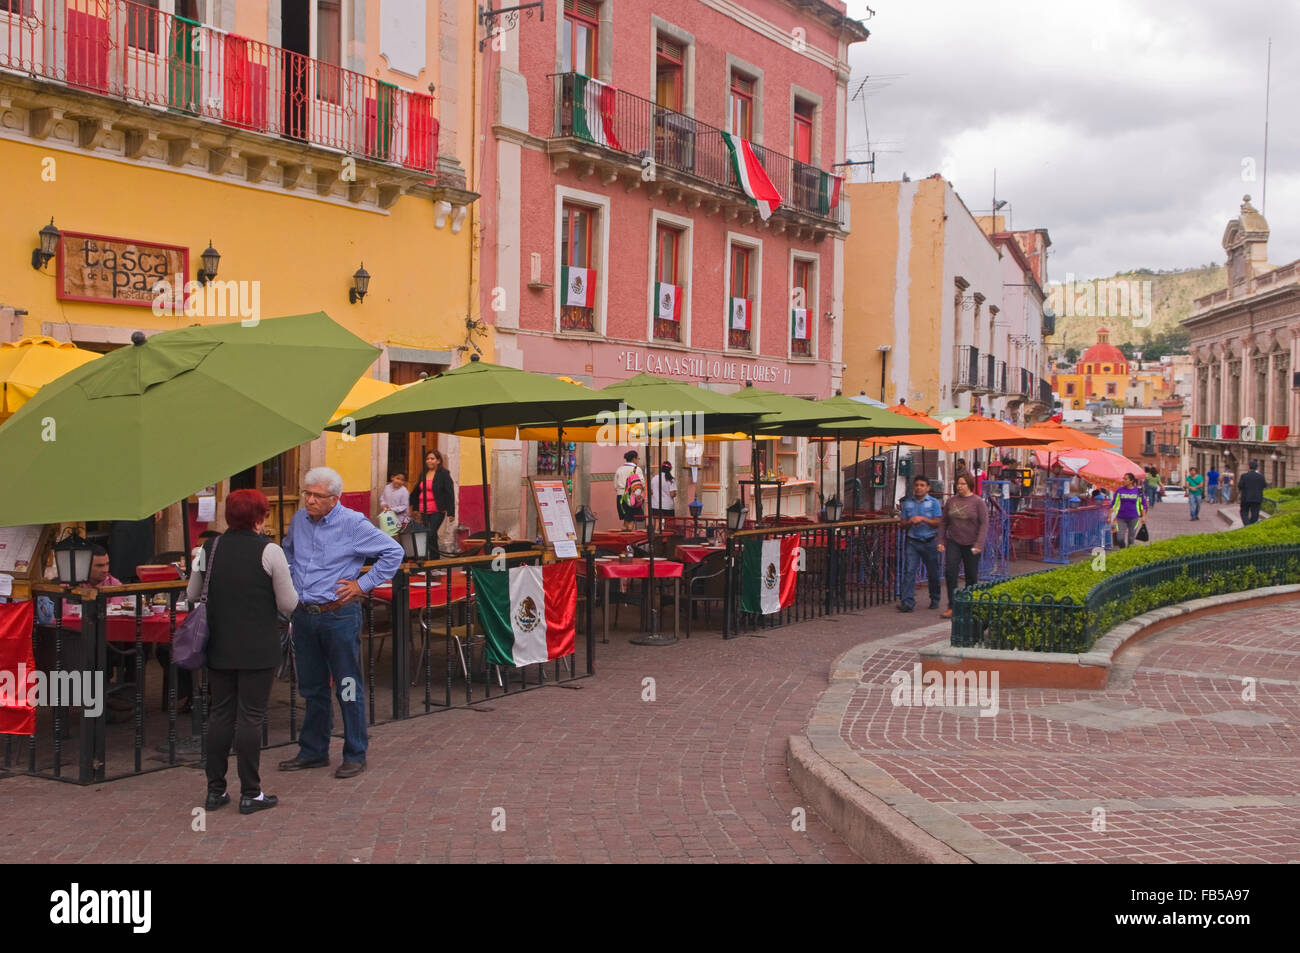 Restaurants and cafes around the Plaza de la Paz (Peace Square) in Guanajuato, Mexico Stock Photo